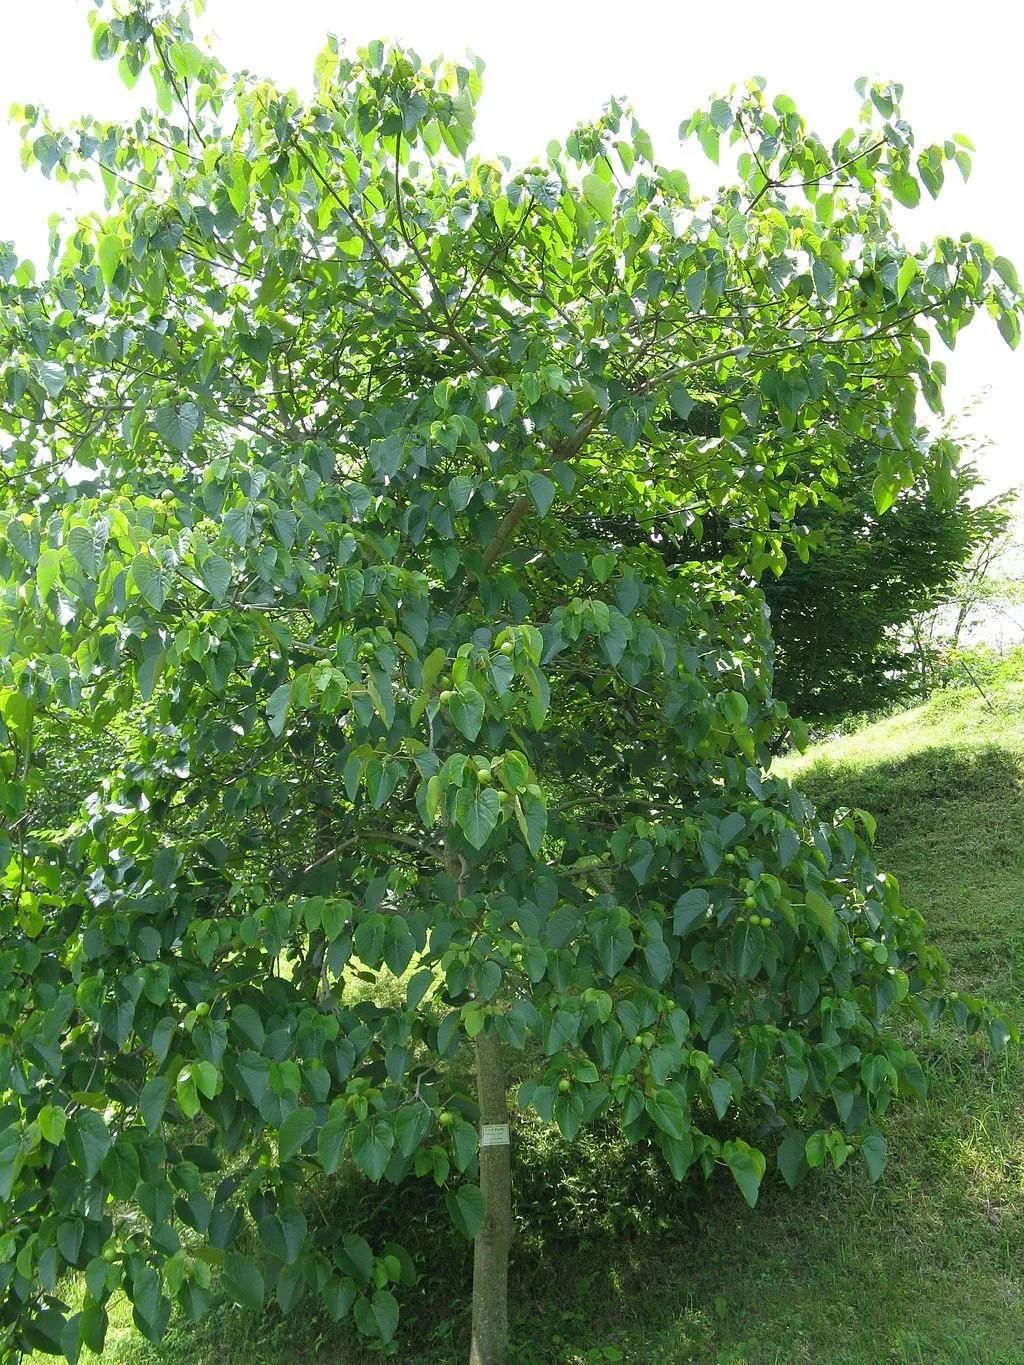 油桐(vernicia fordii)隶属于大戟科油桐属,是一种落叶乔木,树高可达